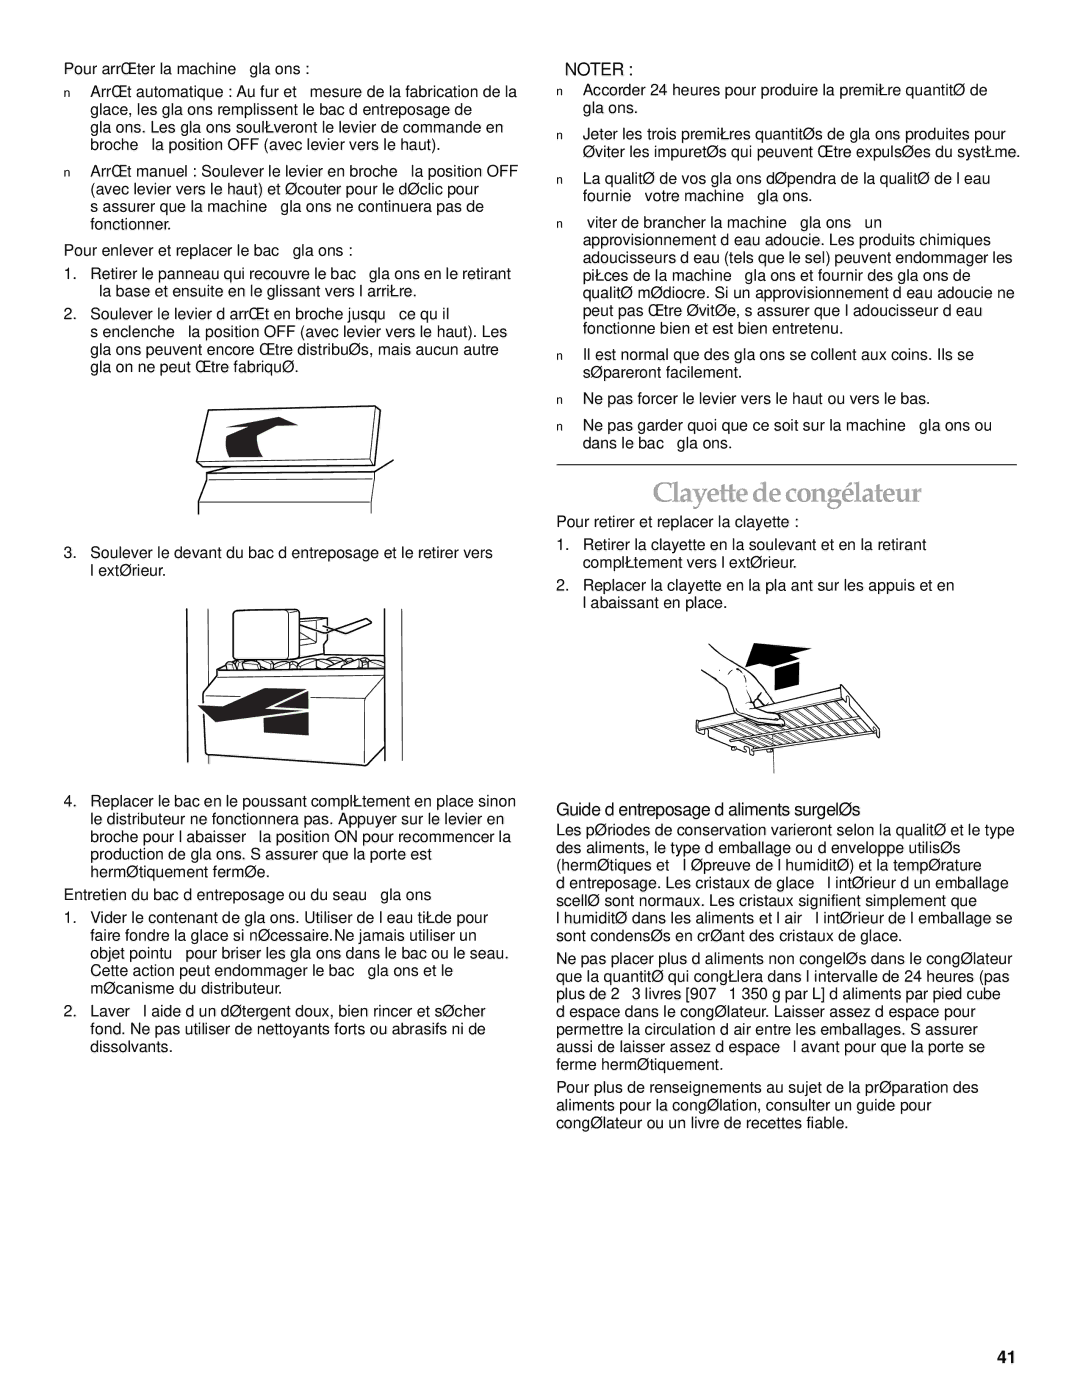 KitchenAid Cabinet Depth Side-by-Side Refrigerator manual Clayette de congélateur, Guide d’entreposage d’aliments surgelés 